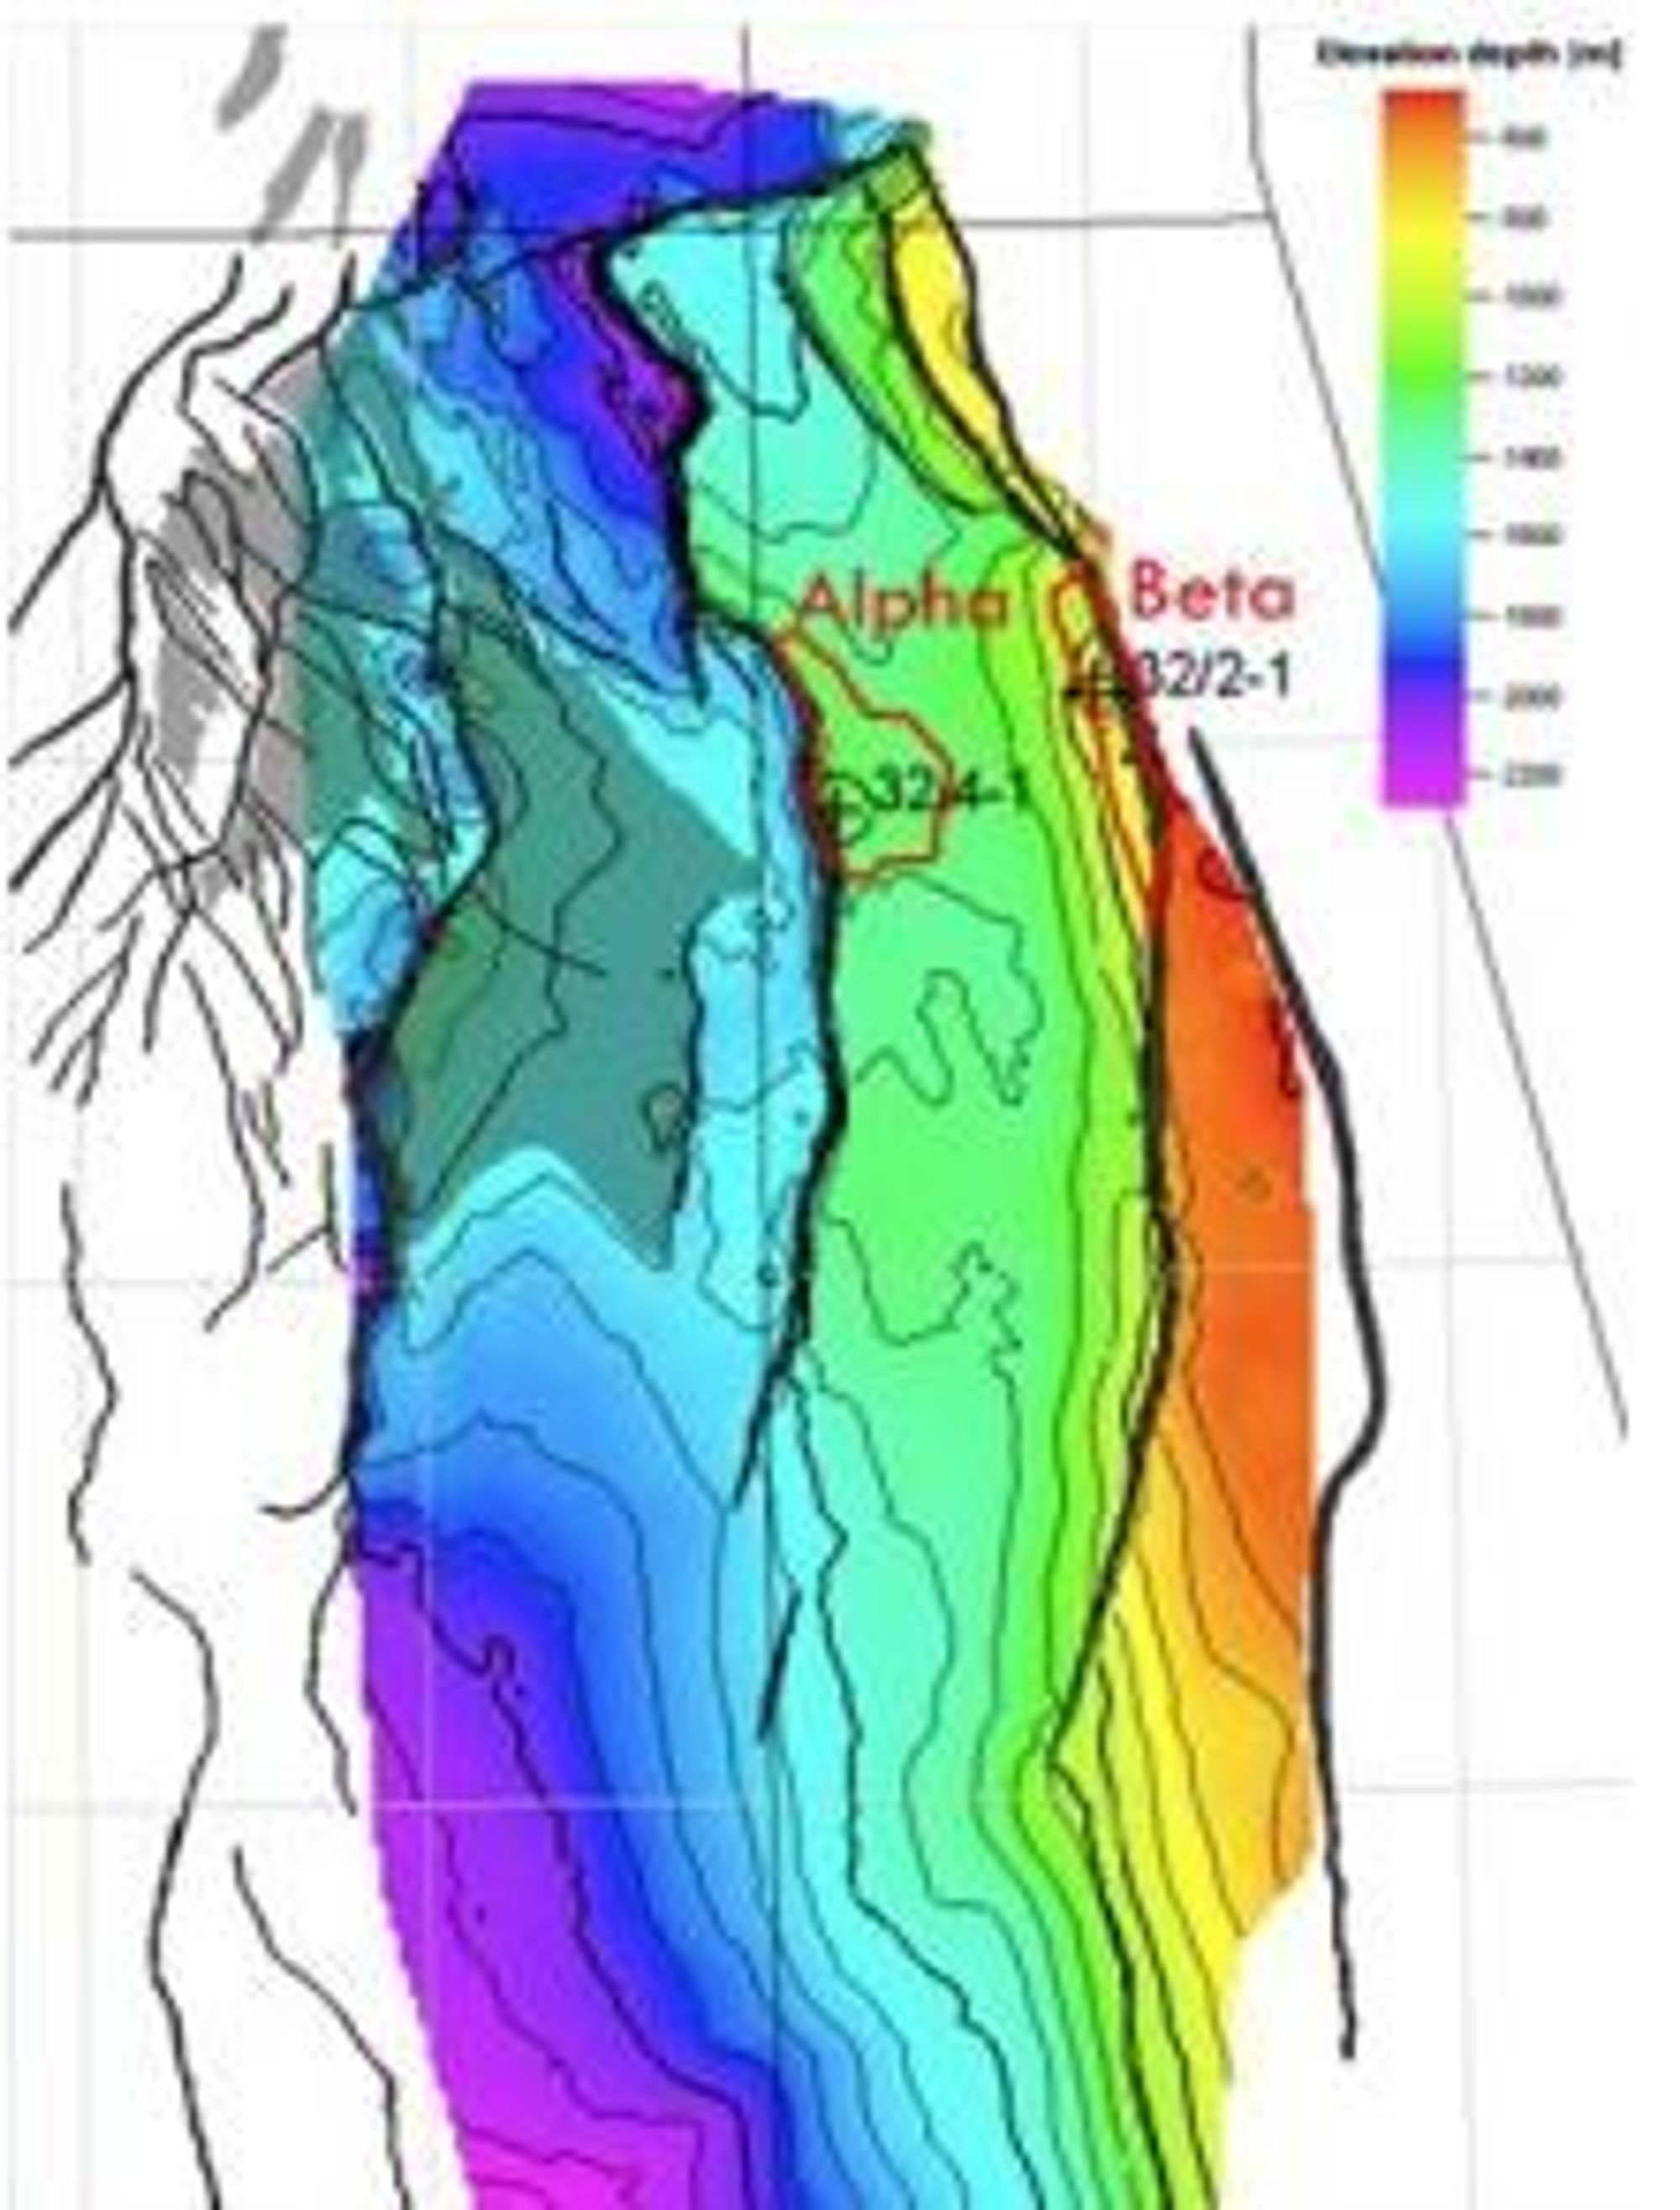 CO2-lagring i Smeaheia: Kartet viser lokalisering av Alpha- og Betastrukturene i den store forkastnings-blokken øst for Troll-feltet